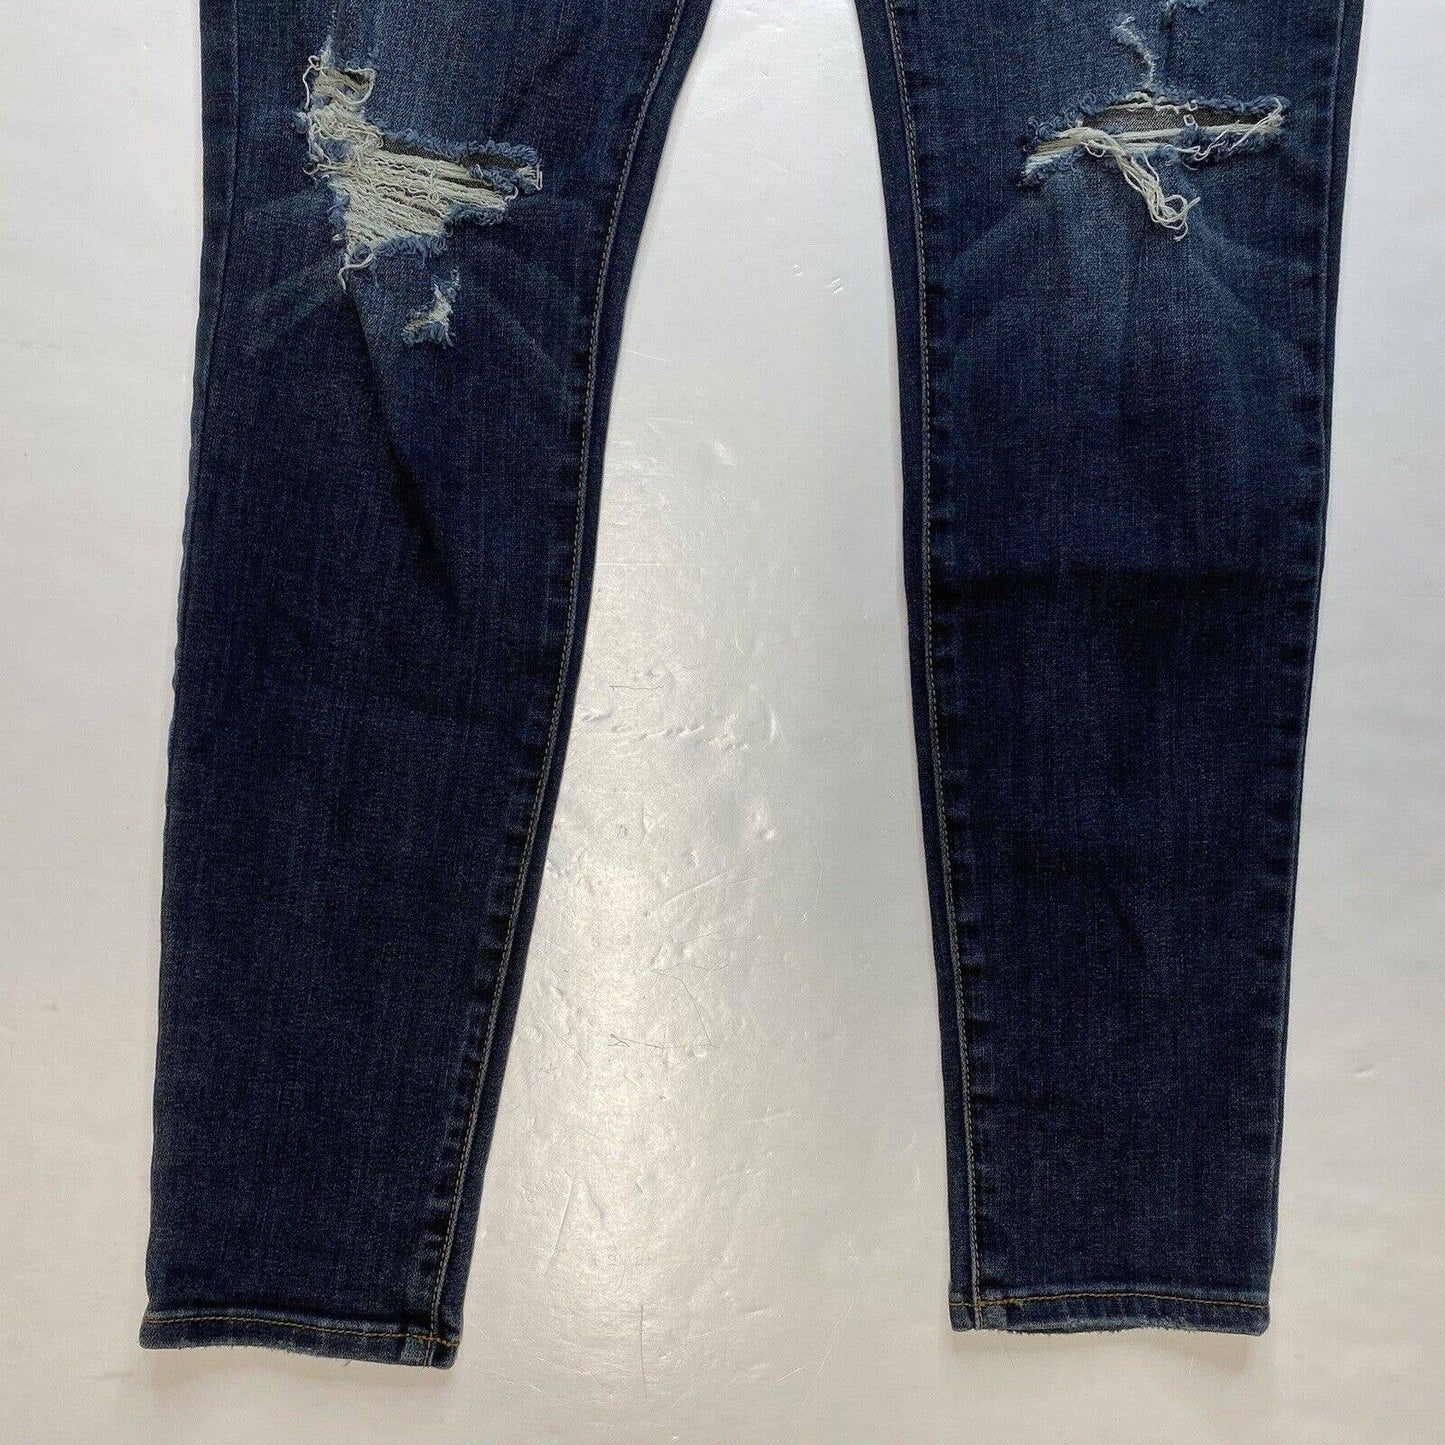 American Eagle Hi-Rise Jegging 6 Reg Super Stretch Denim Jeans Dark Ripped Holes